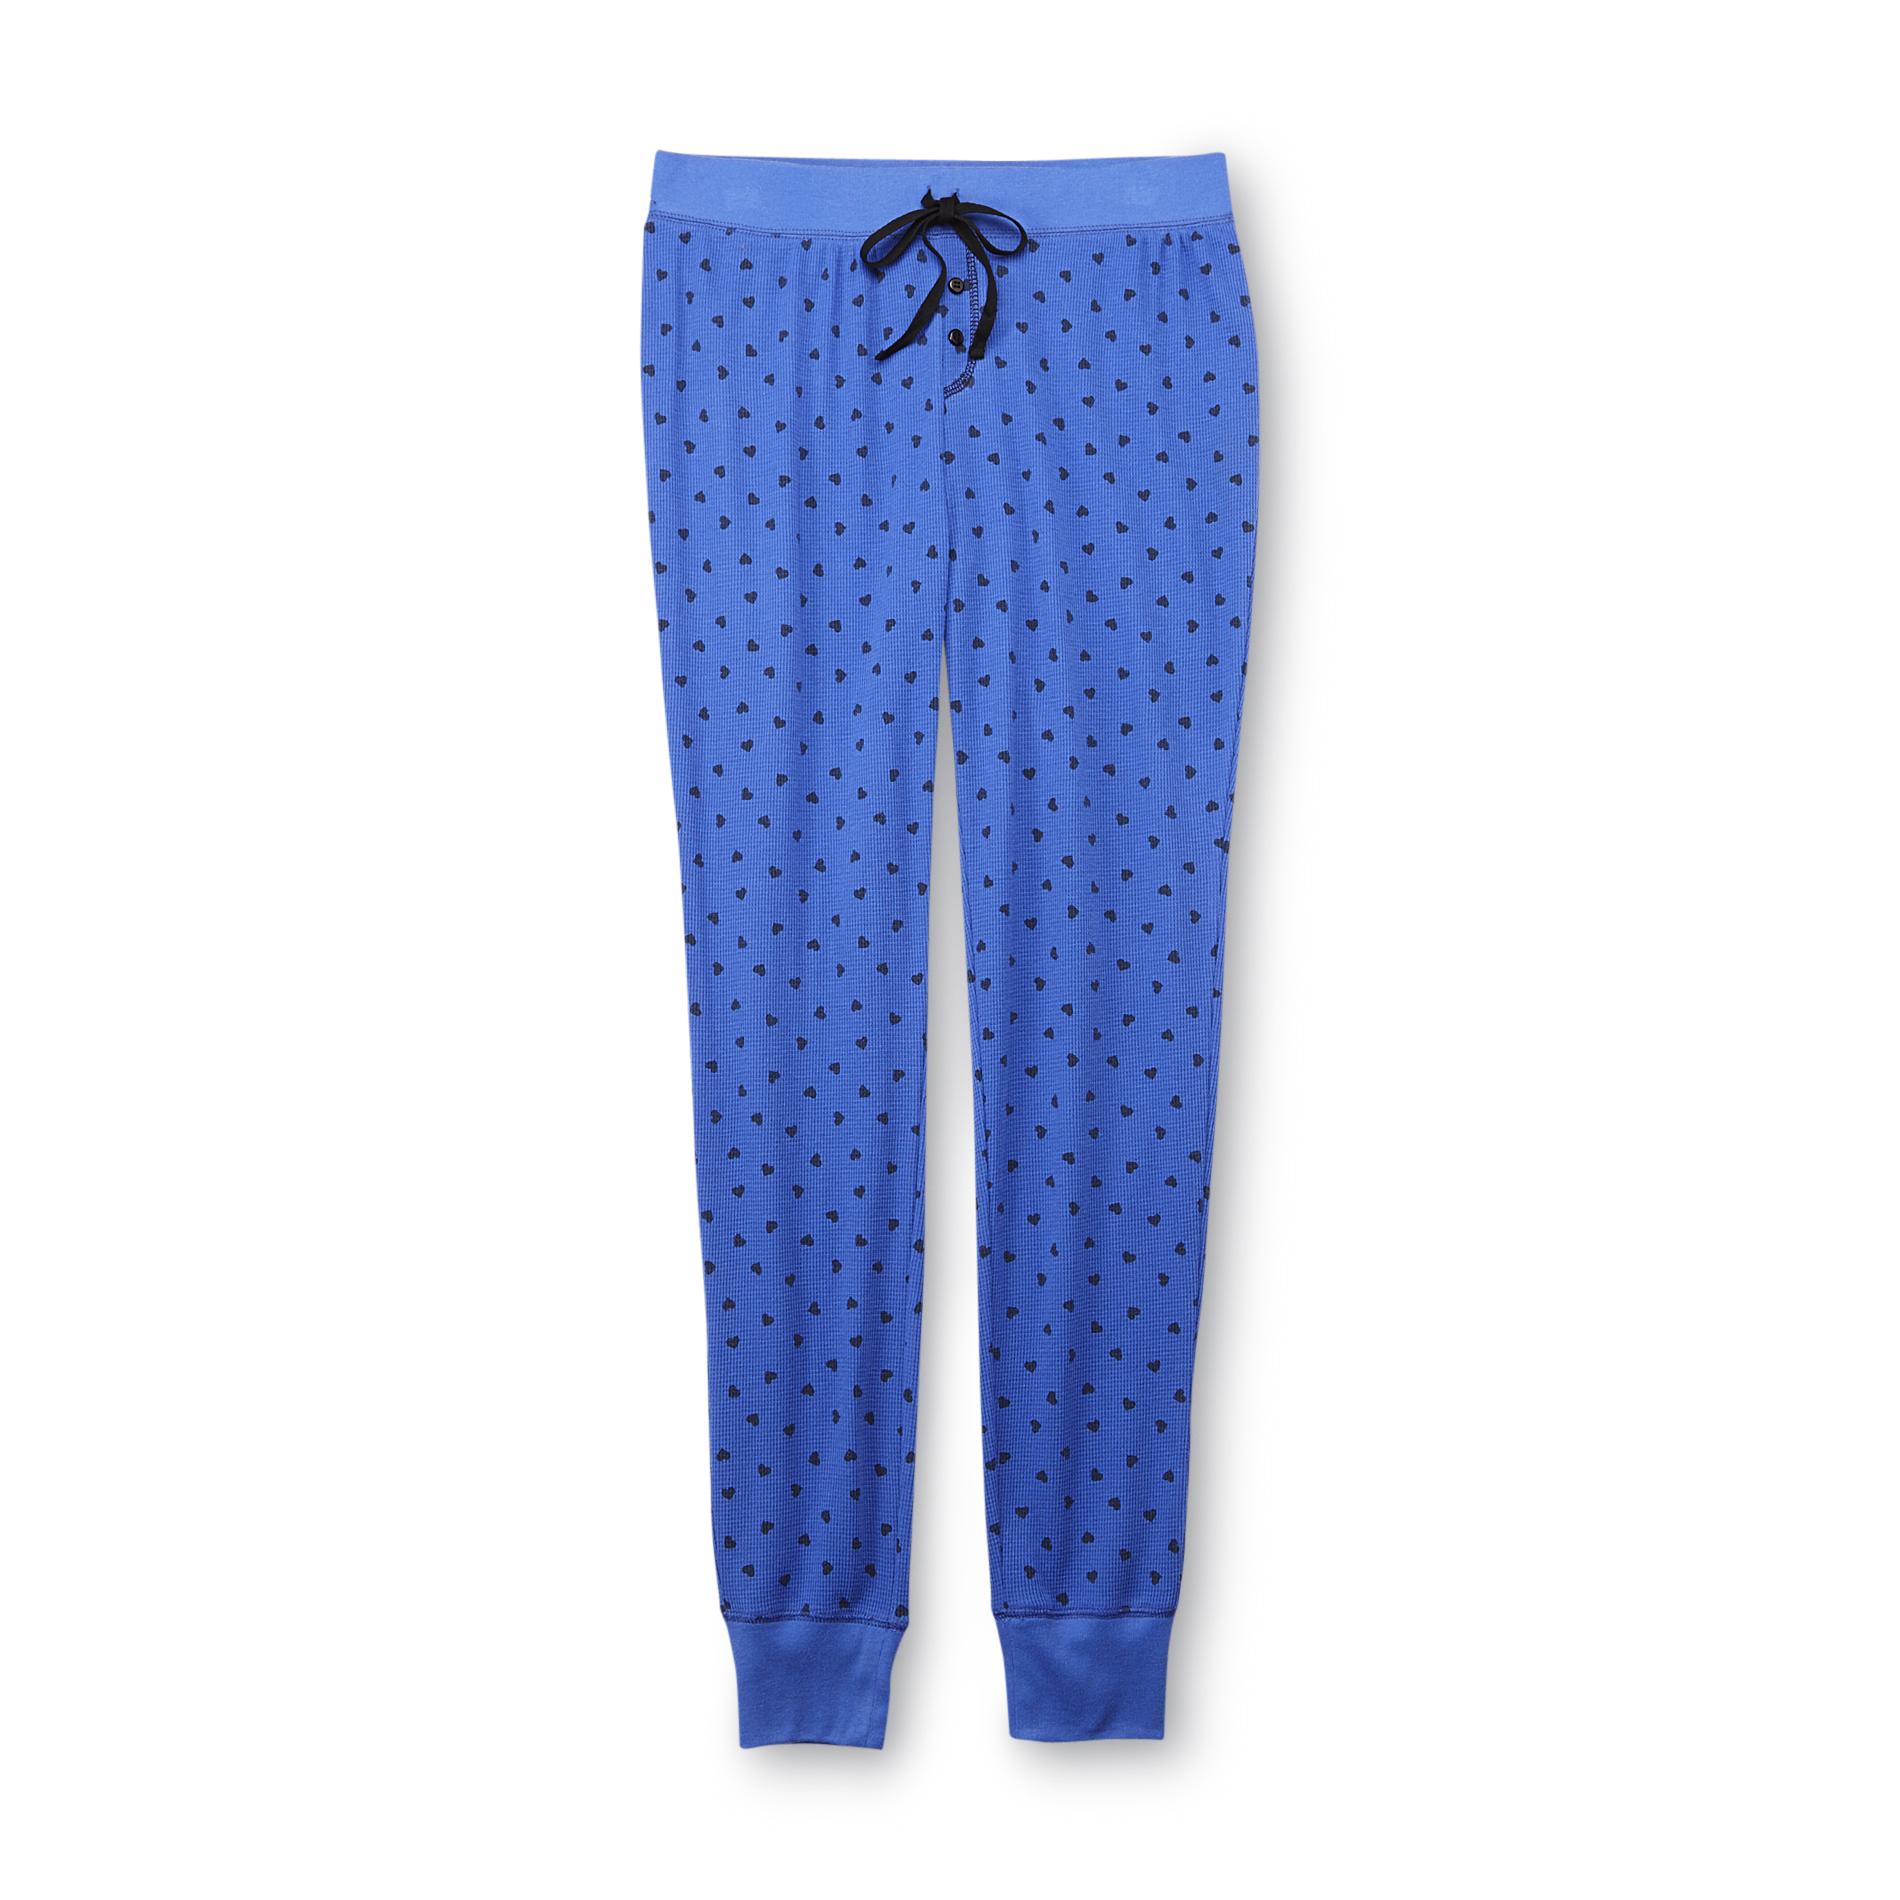 Joe Boxer Women's Thermal Skinny Pajama Pants - Hearts